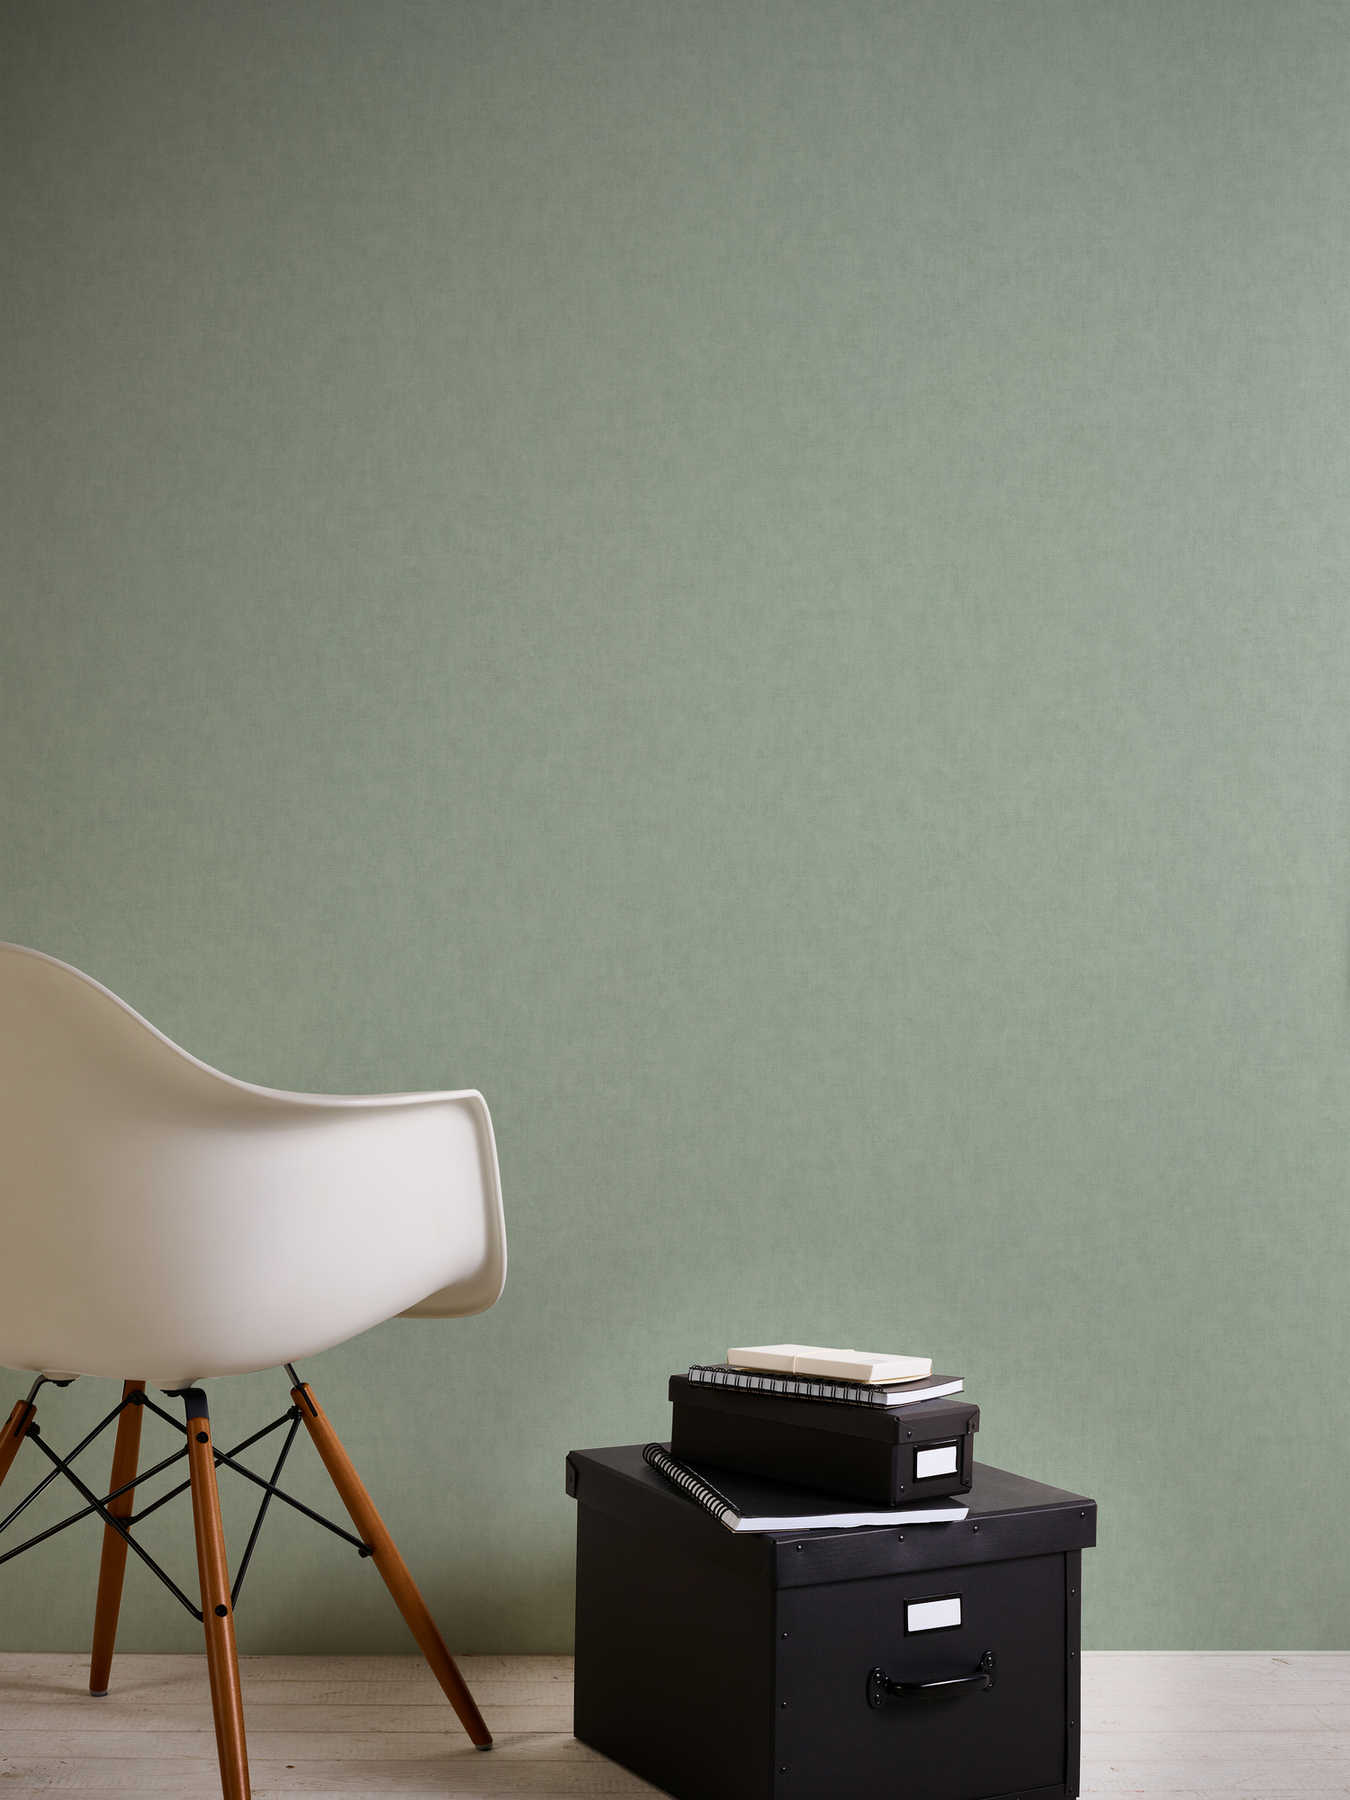             Non-woven wallpaper textile look Scandinavian style - grey, green
        